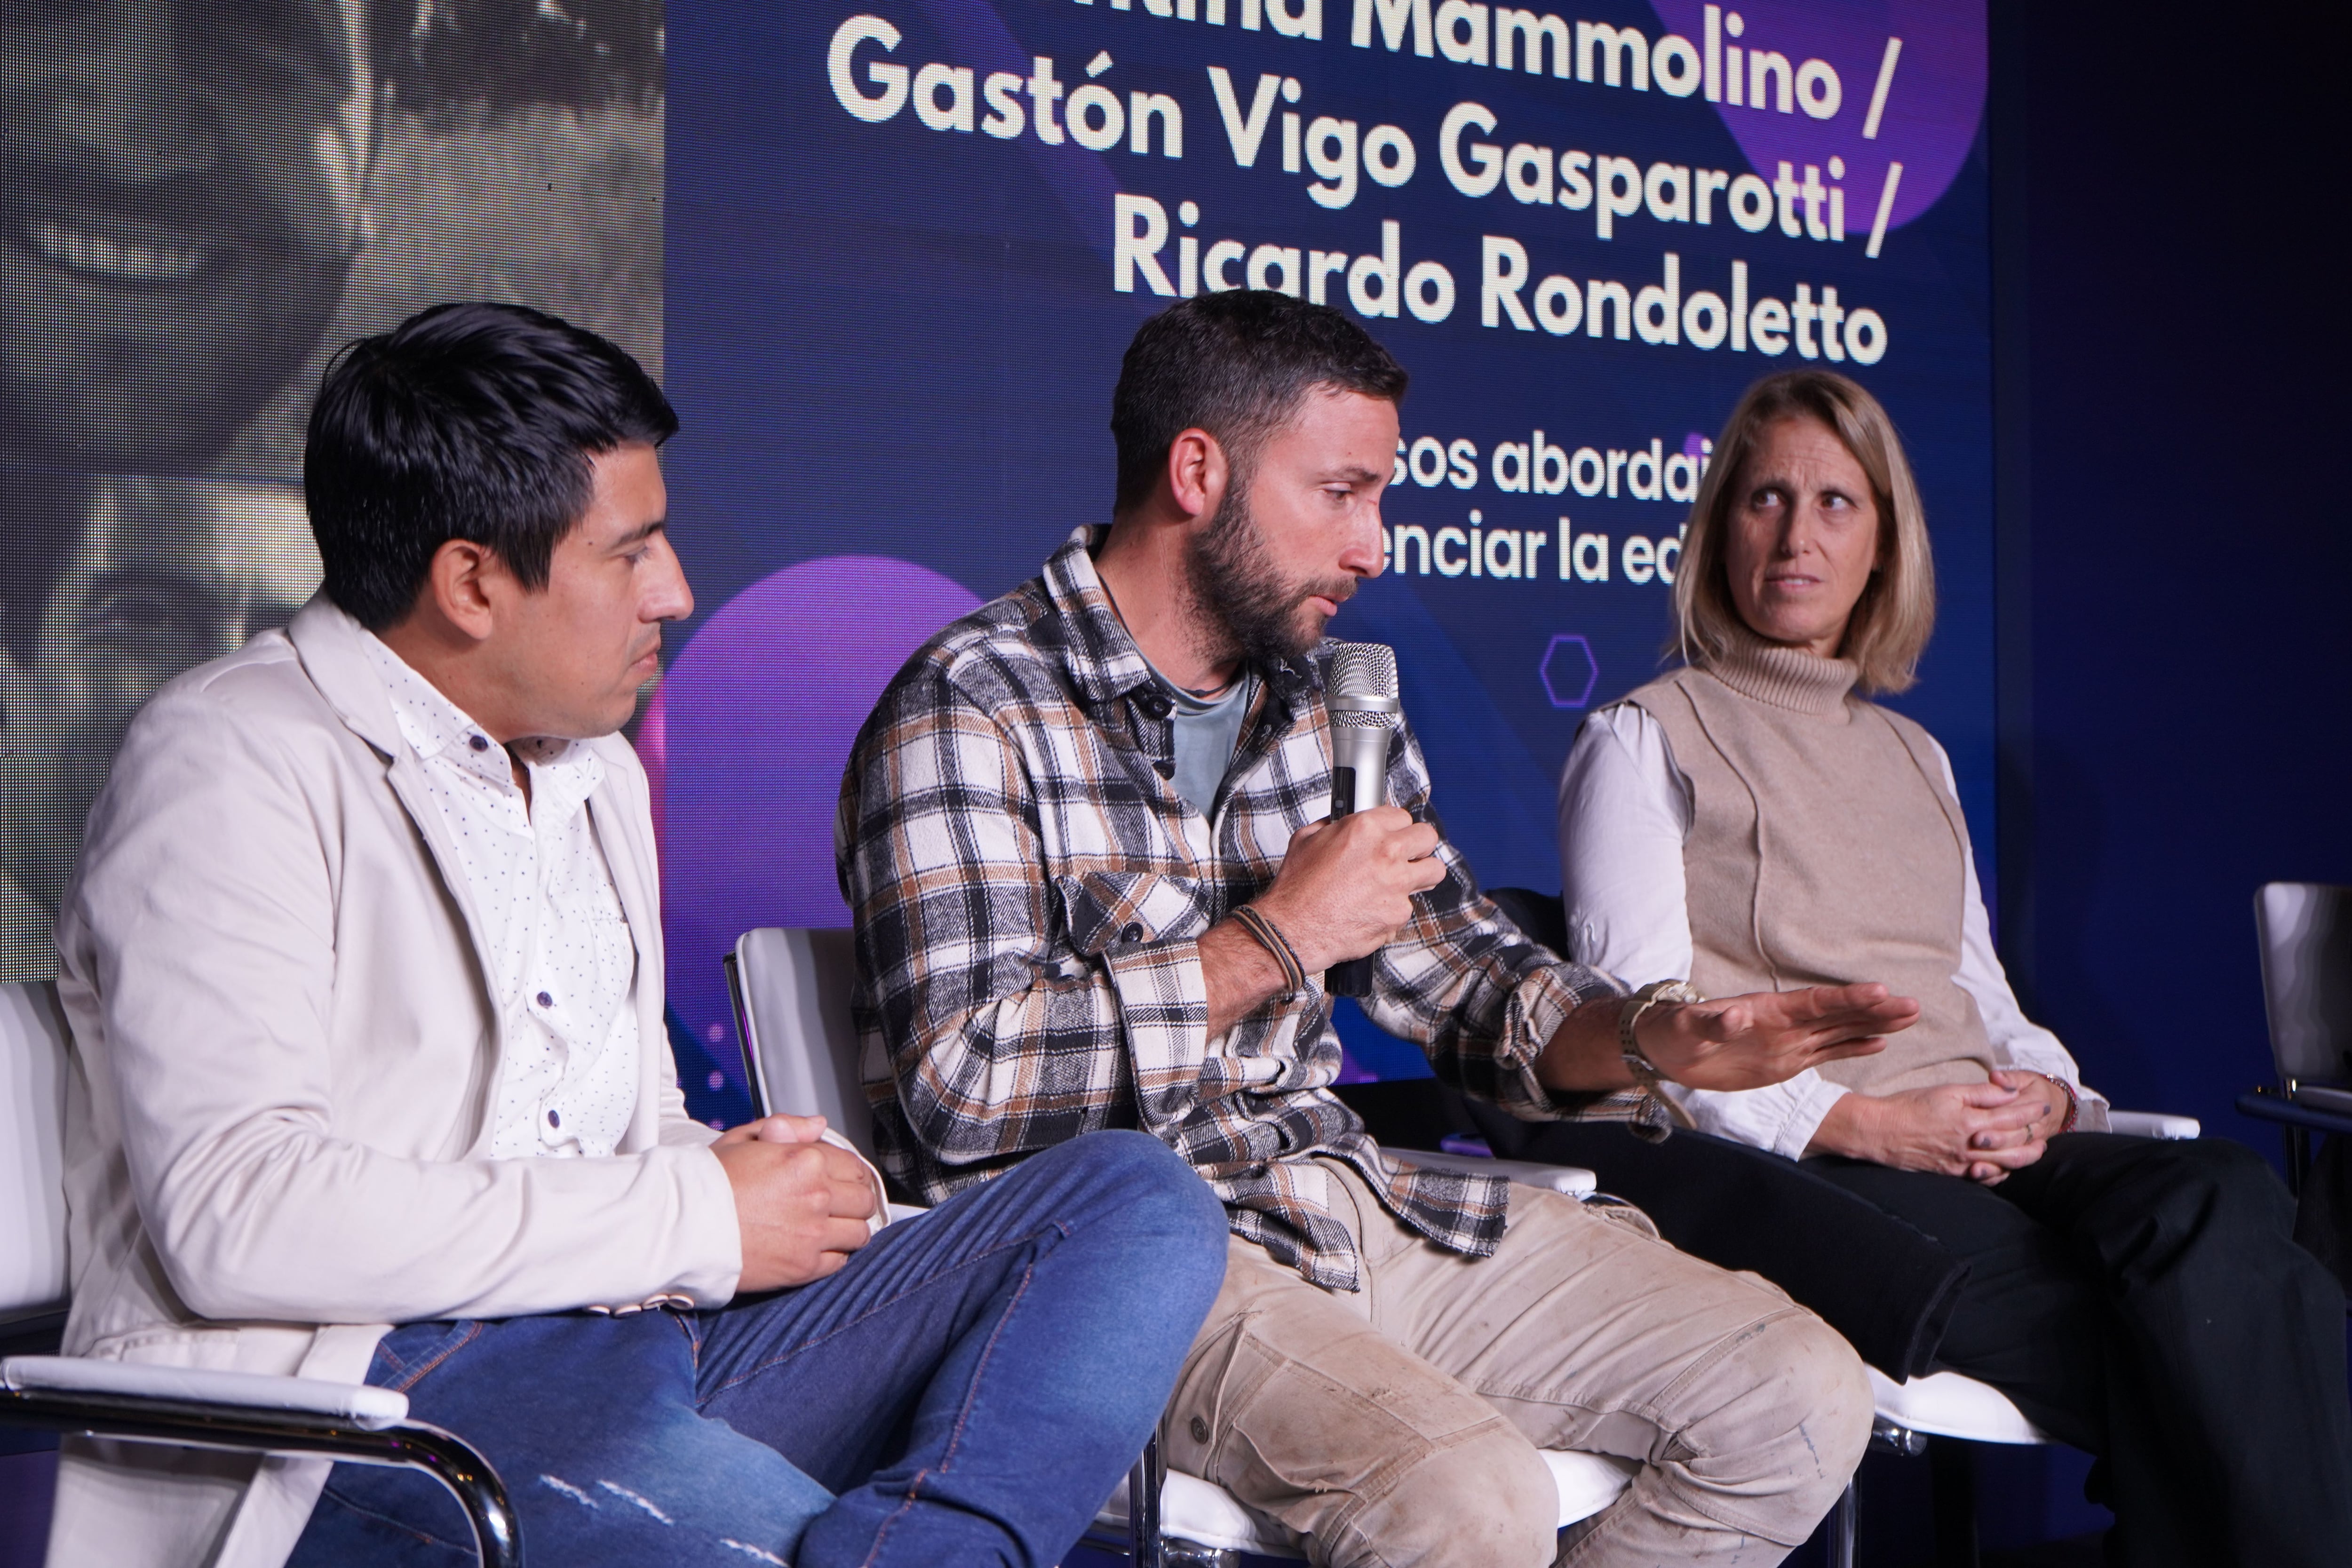 Ricardo Rondoletto, Gastón Vigo Gasparotti y Valentina Mammolino compartieron experiencias de la inclusión en la educación  (Agustín Brashich/Ticmas)